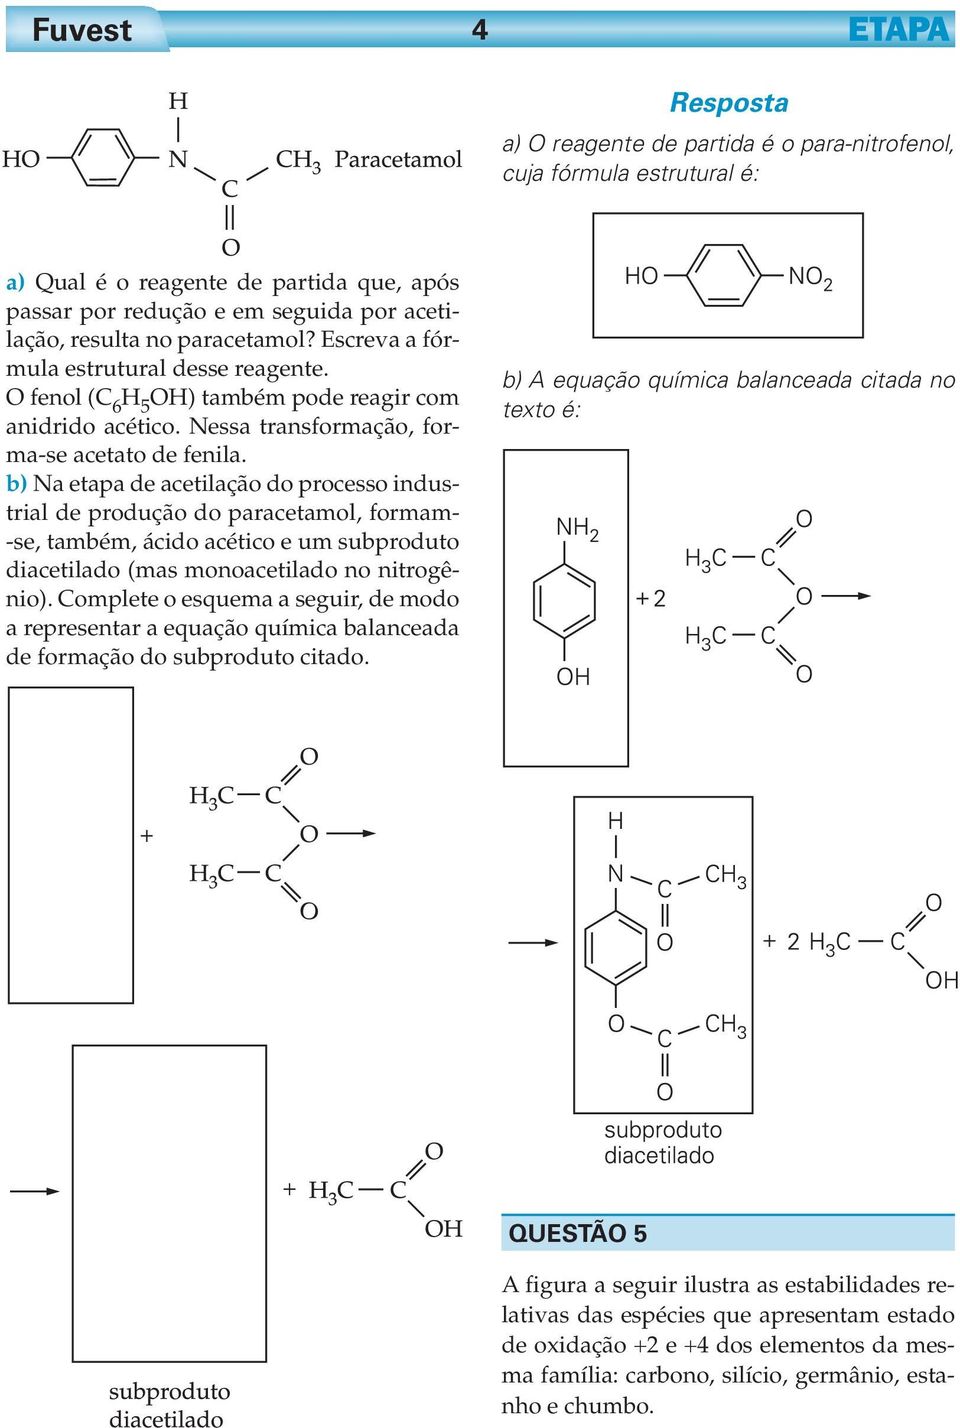 b) Na etapa de acetilação do processo industrial de produção do paracetamol, formam- -se, também, ácido acético e um subproduto diacetilado (mas monoacetilado no nitrogênio).